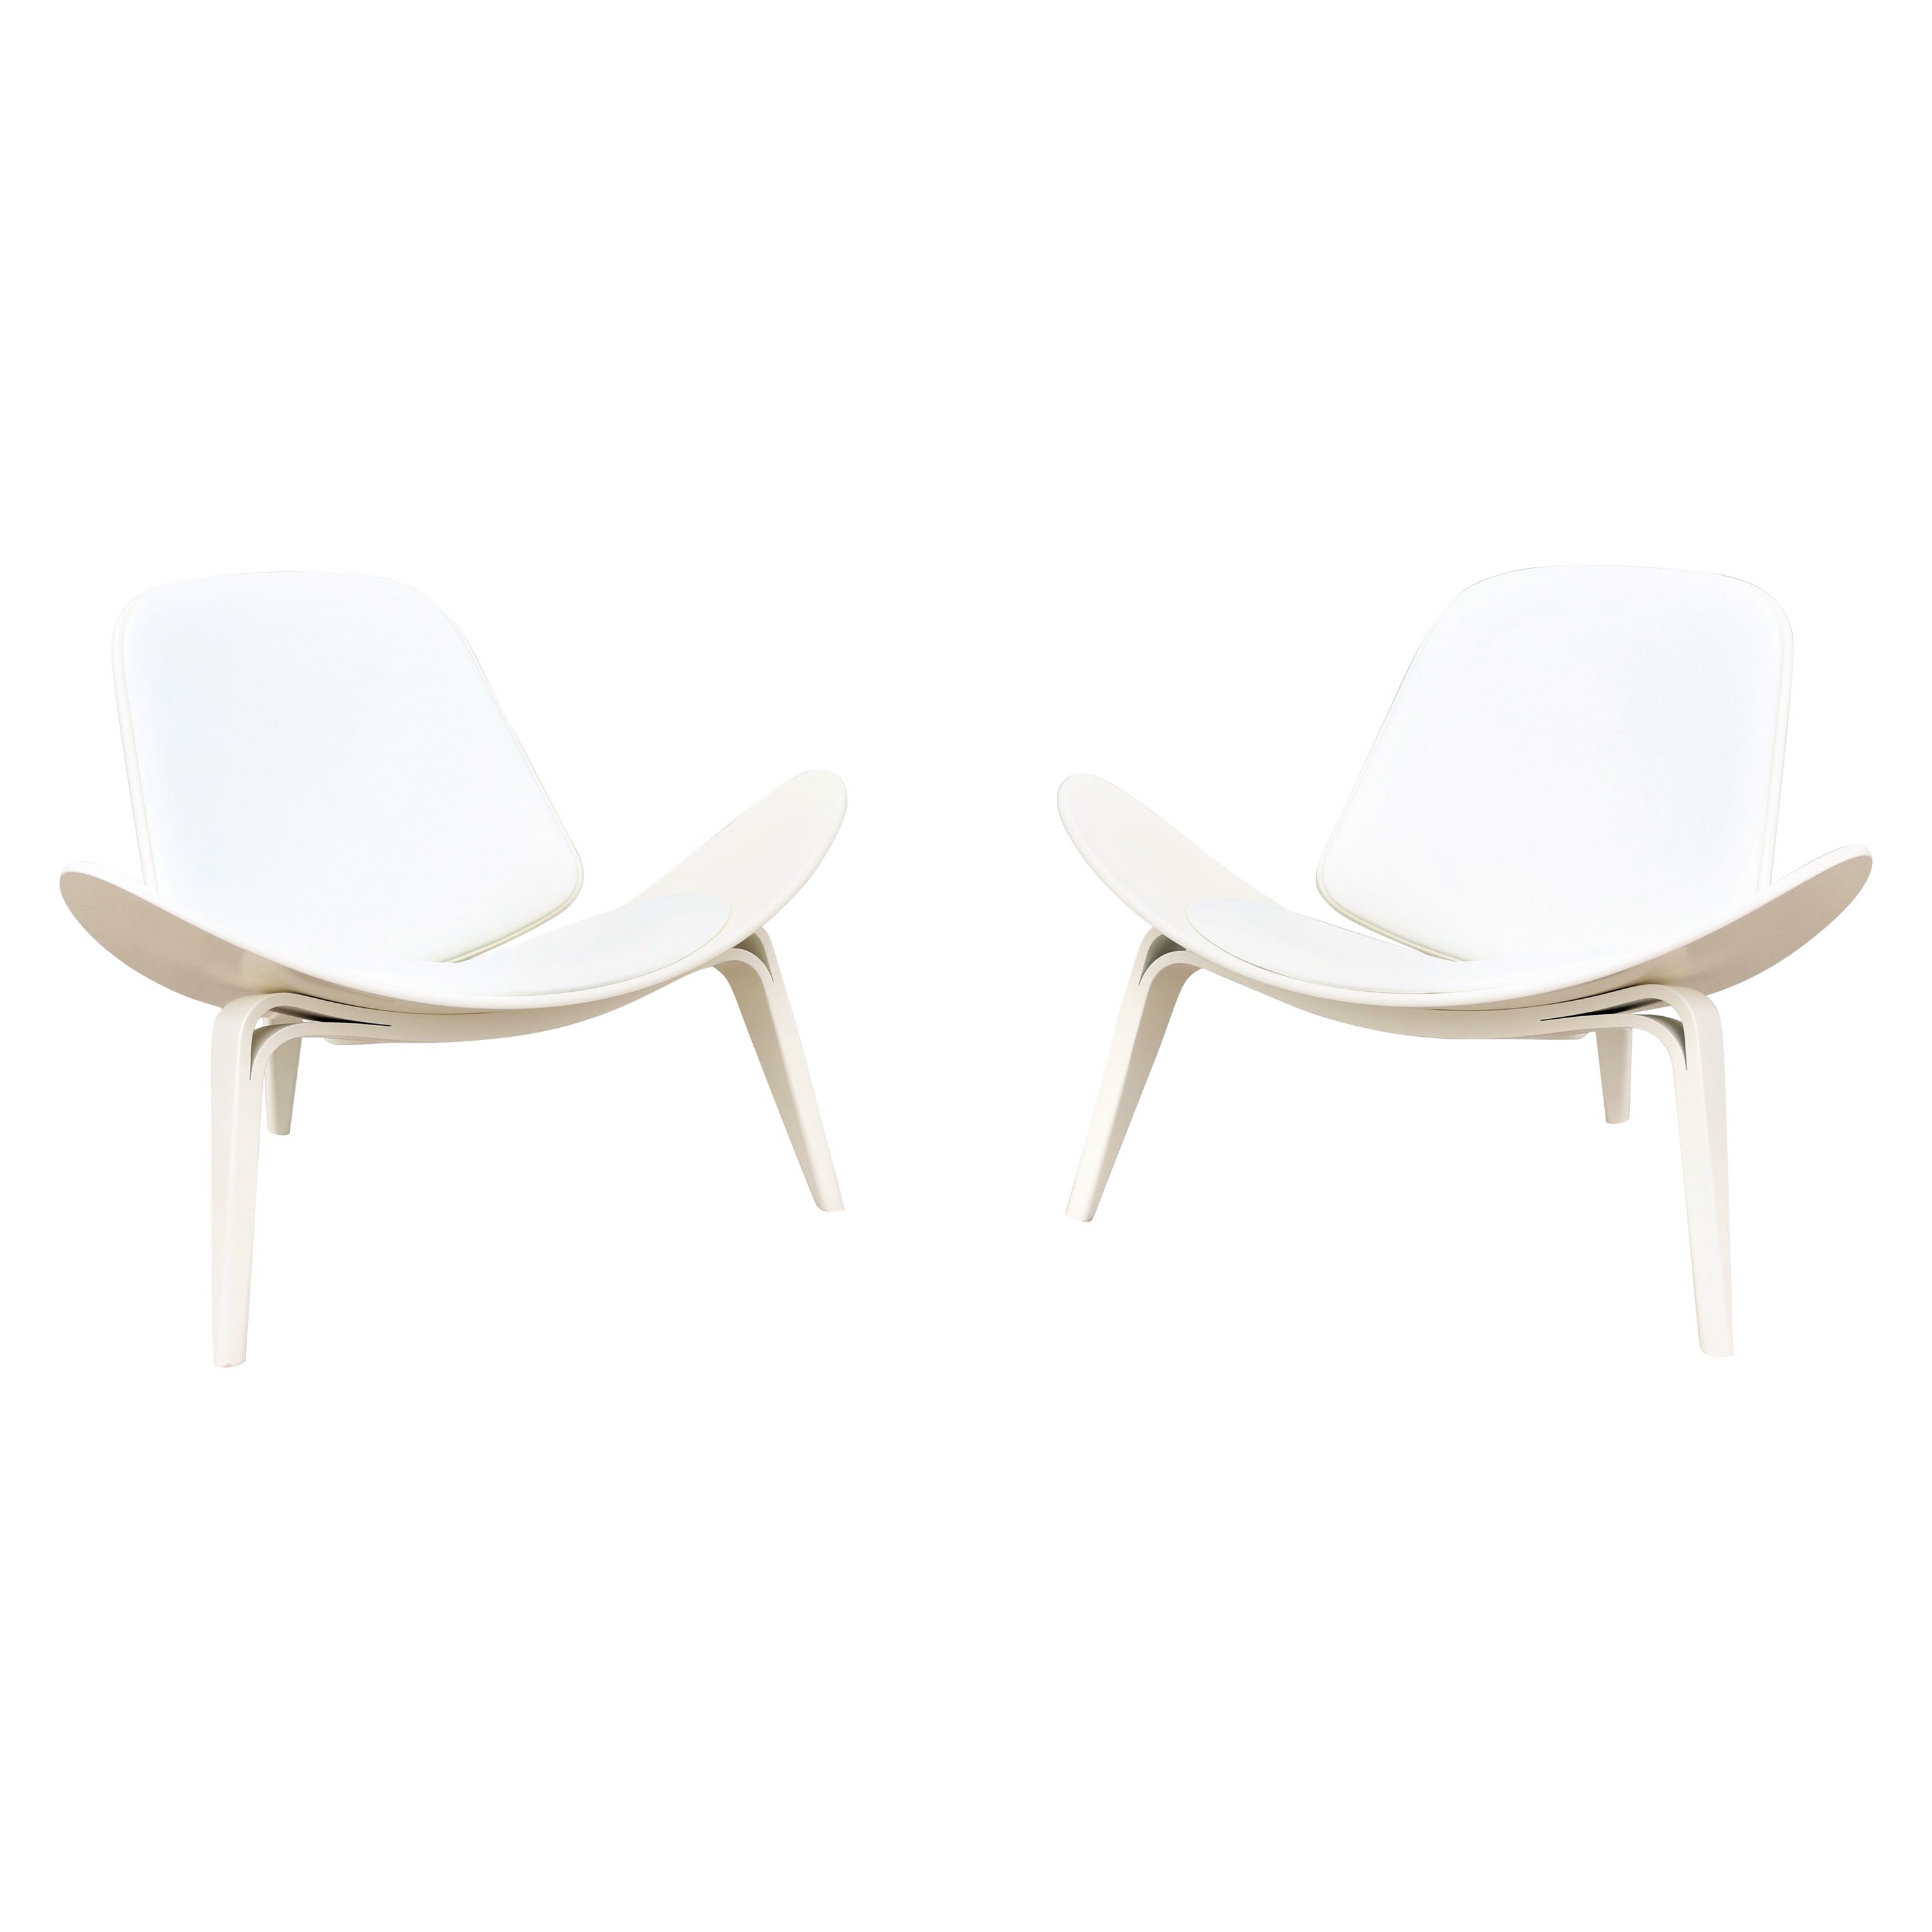 Paire de chaises coquillage CH07 de Hans J. Wegner pour Carl Hansen, de style danois moderne du milieu du siècle dernier